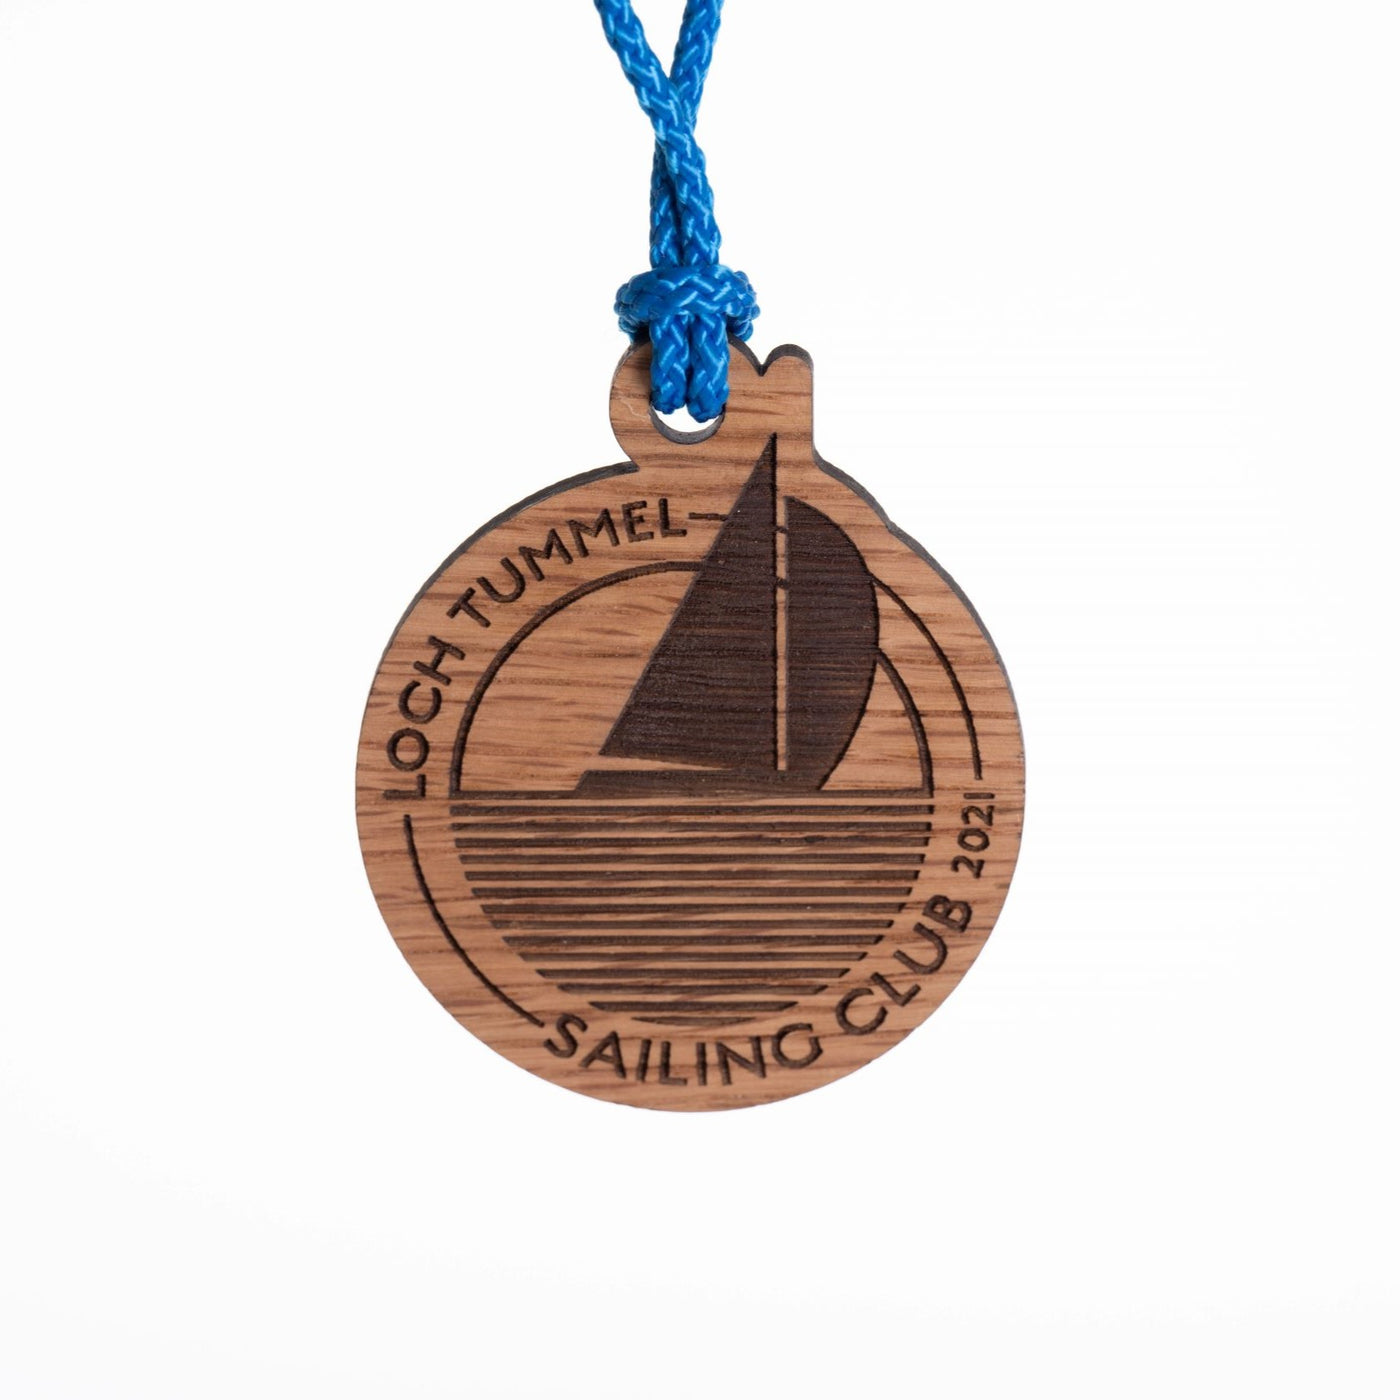 Sailing Club Medal